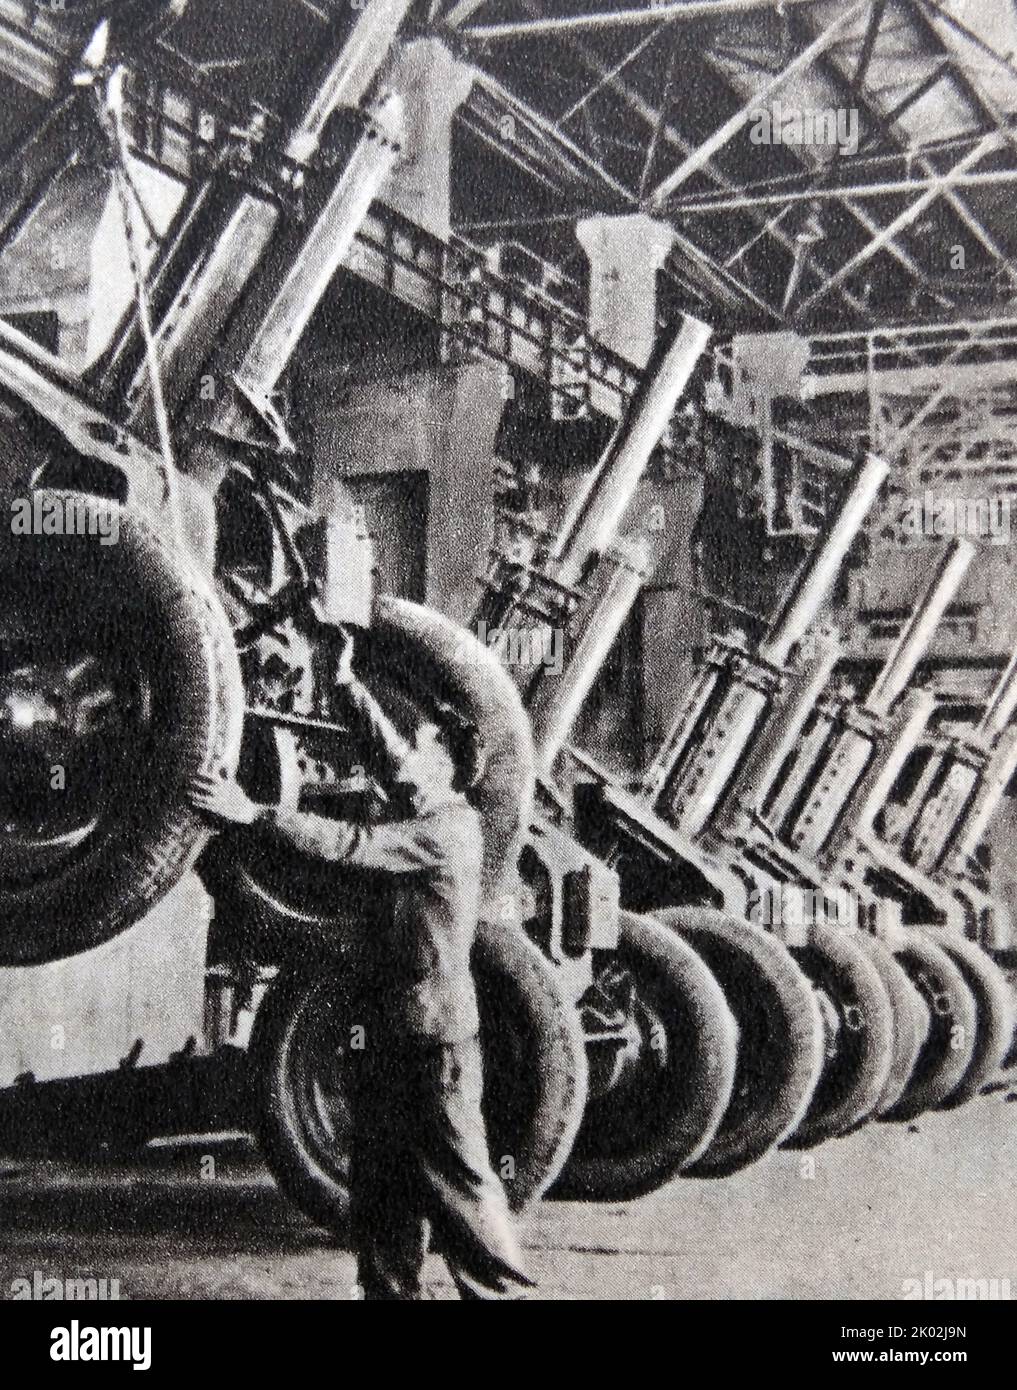 Produzione di attrezzature da guerra durante la Grande guerra patriottica in URSS Foto Stock